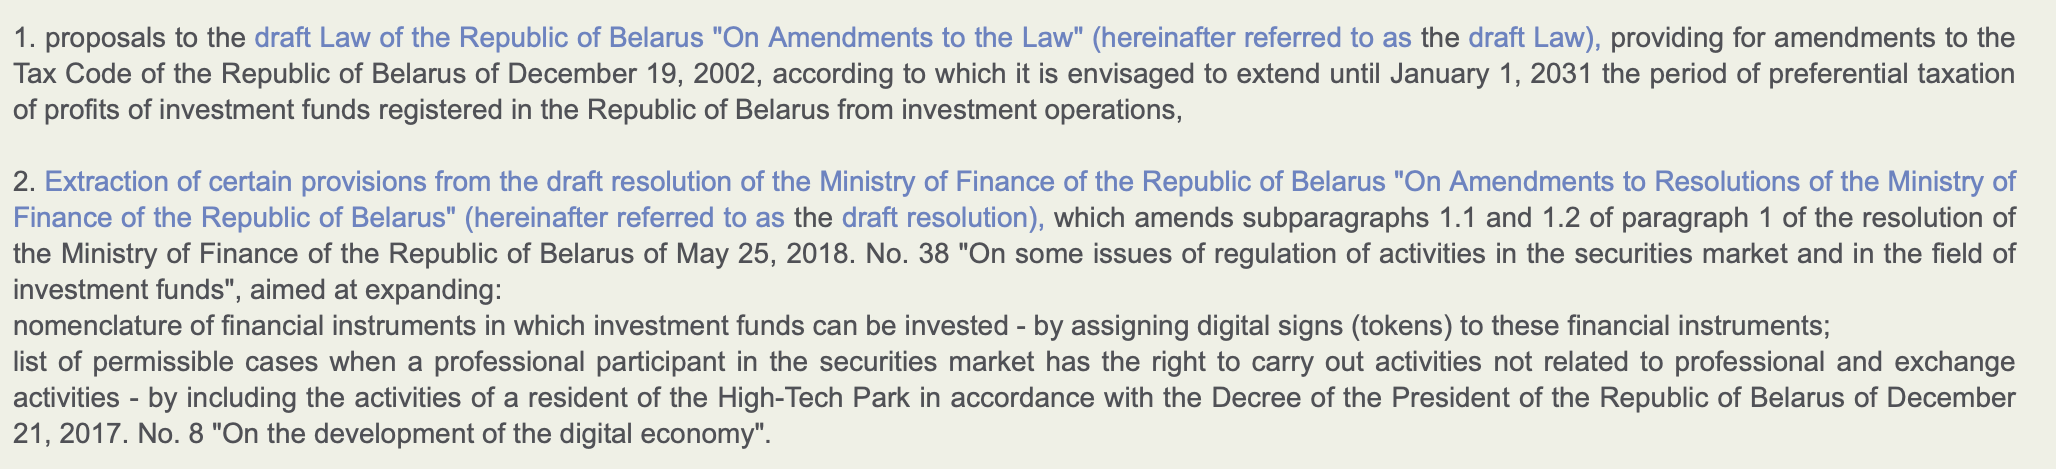 Otro paso adelante: Bielorrusia permitirá la inversión institucional en activos digitales